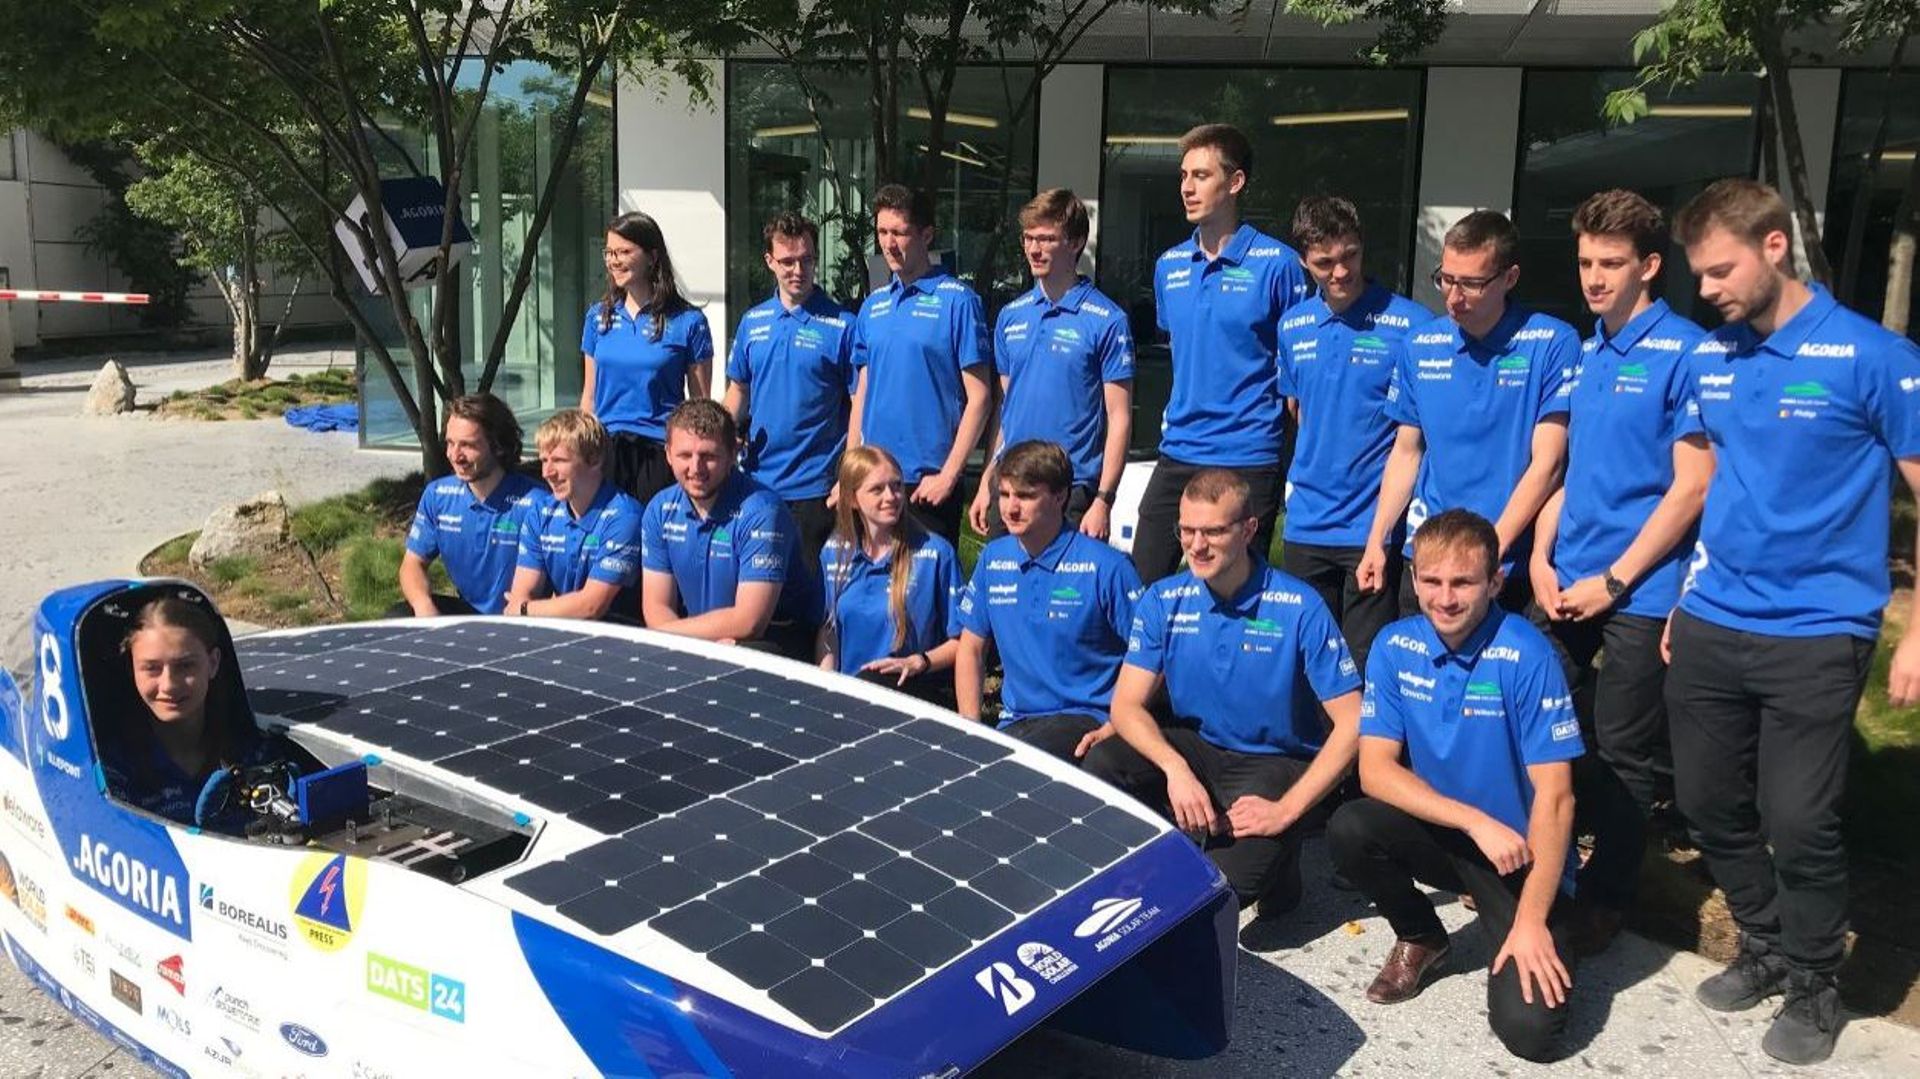 Les entraînements commencent pour la Blue Point, une voiture solaire développée par des étudiants ingénieurs